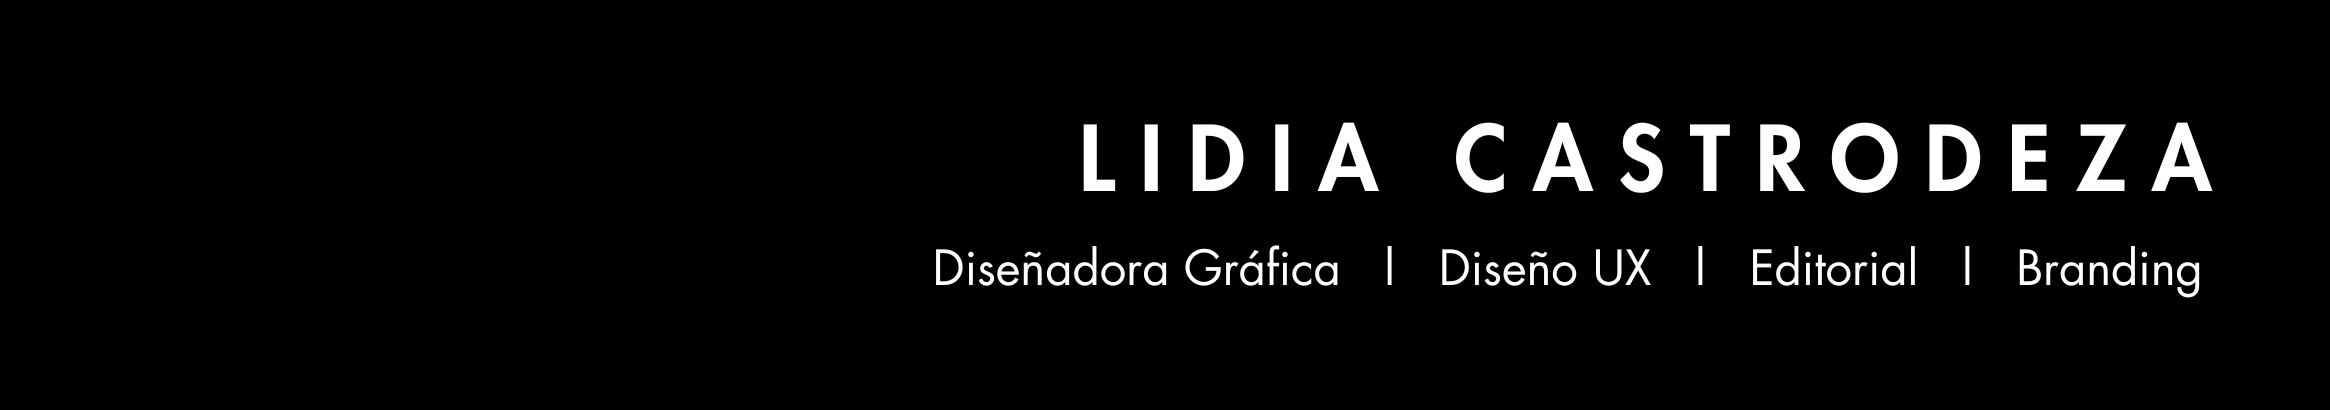 Lidia Castrodeza Chica's profile banner